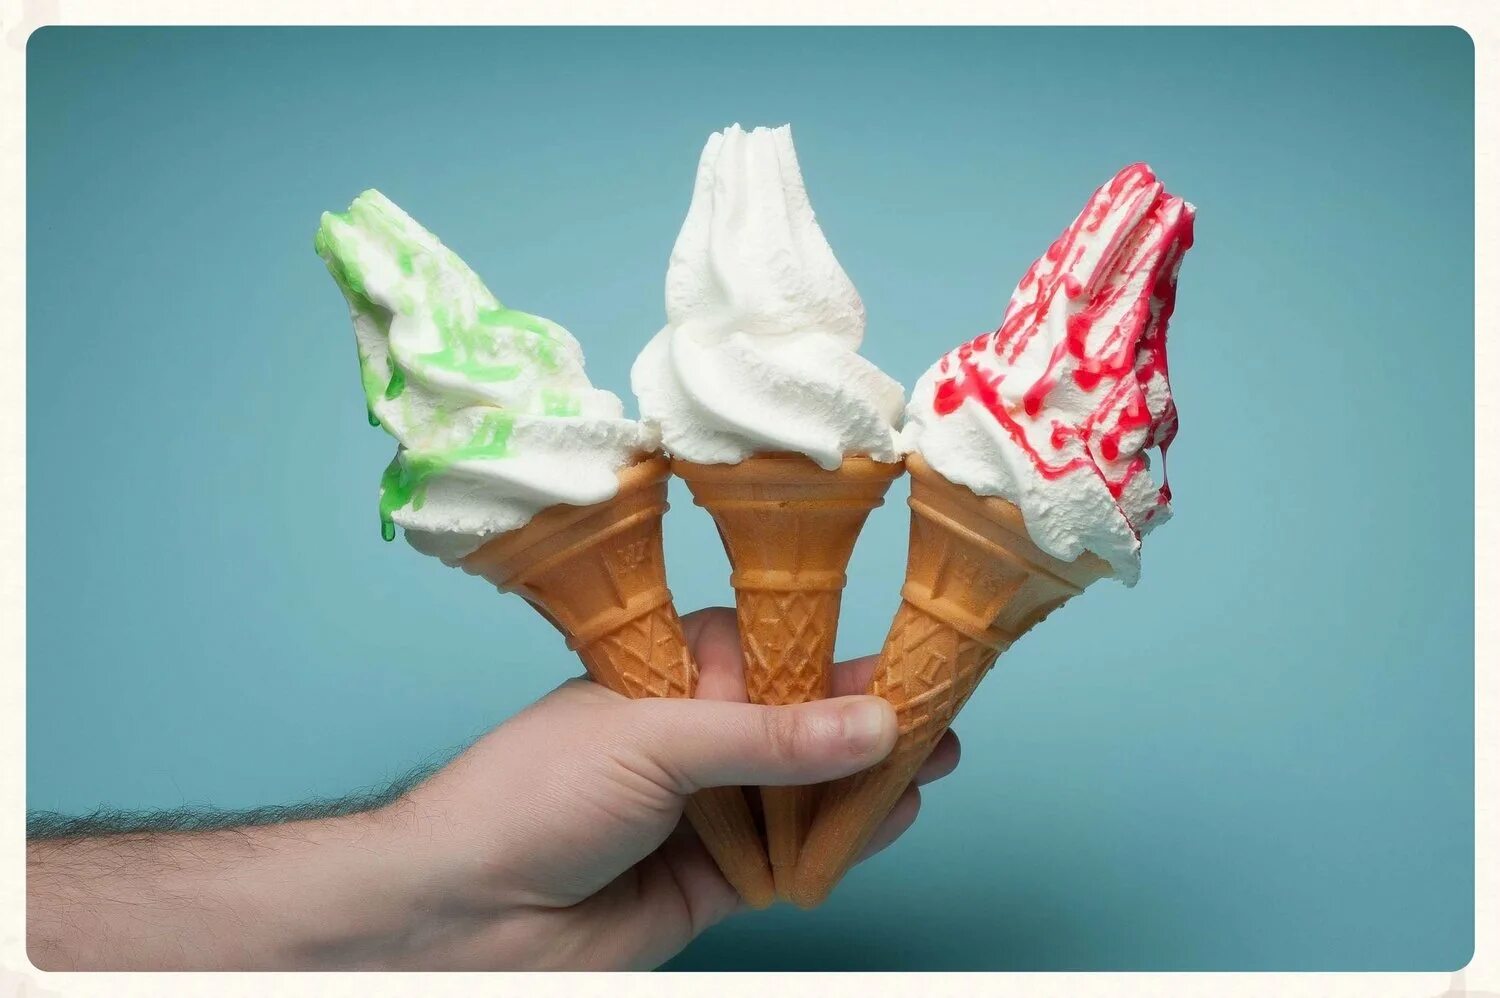 Мороженое учи. Мороженое Милка рожок. Мягкое мороженое. Реклама мороженого. Мягкое мороженое в креманках.